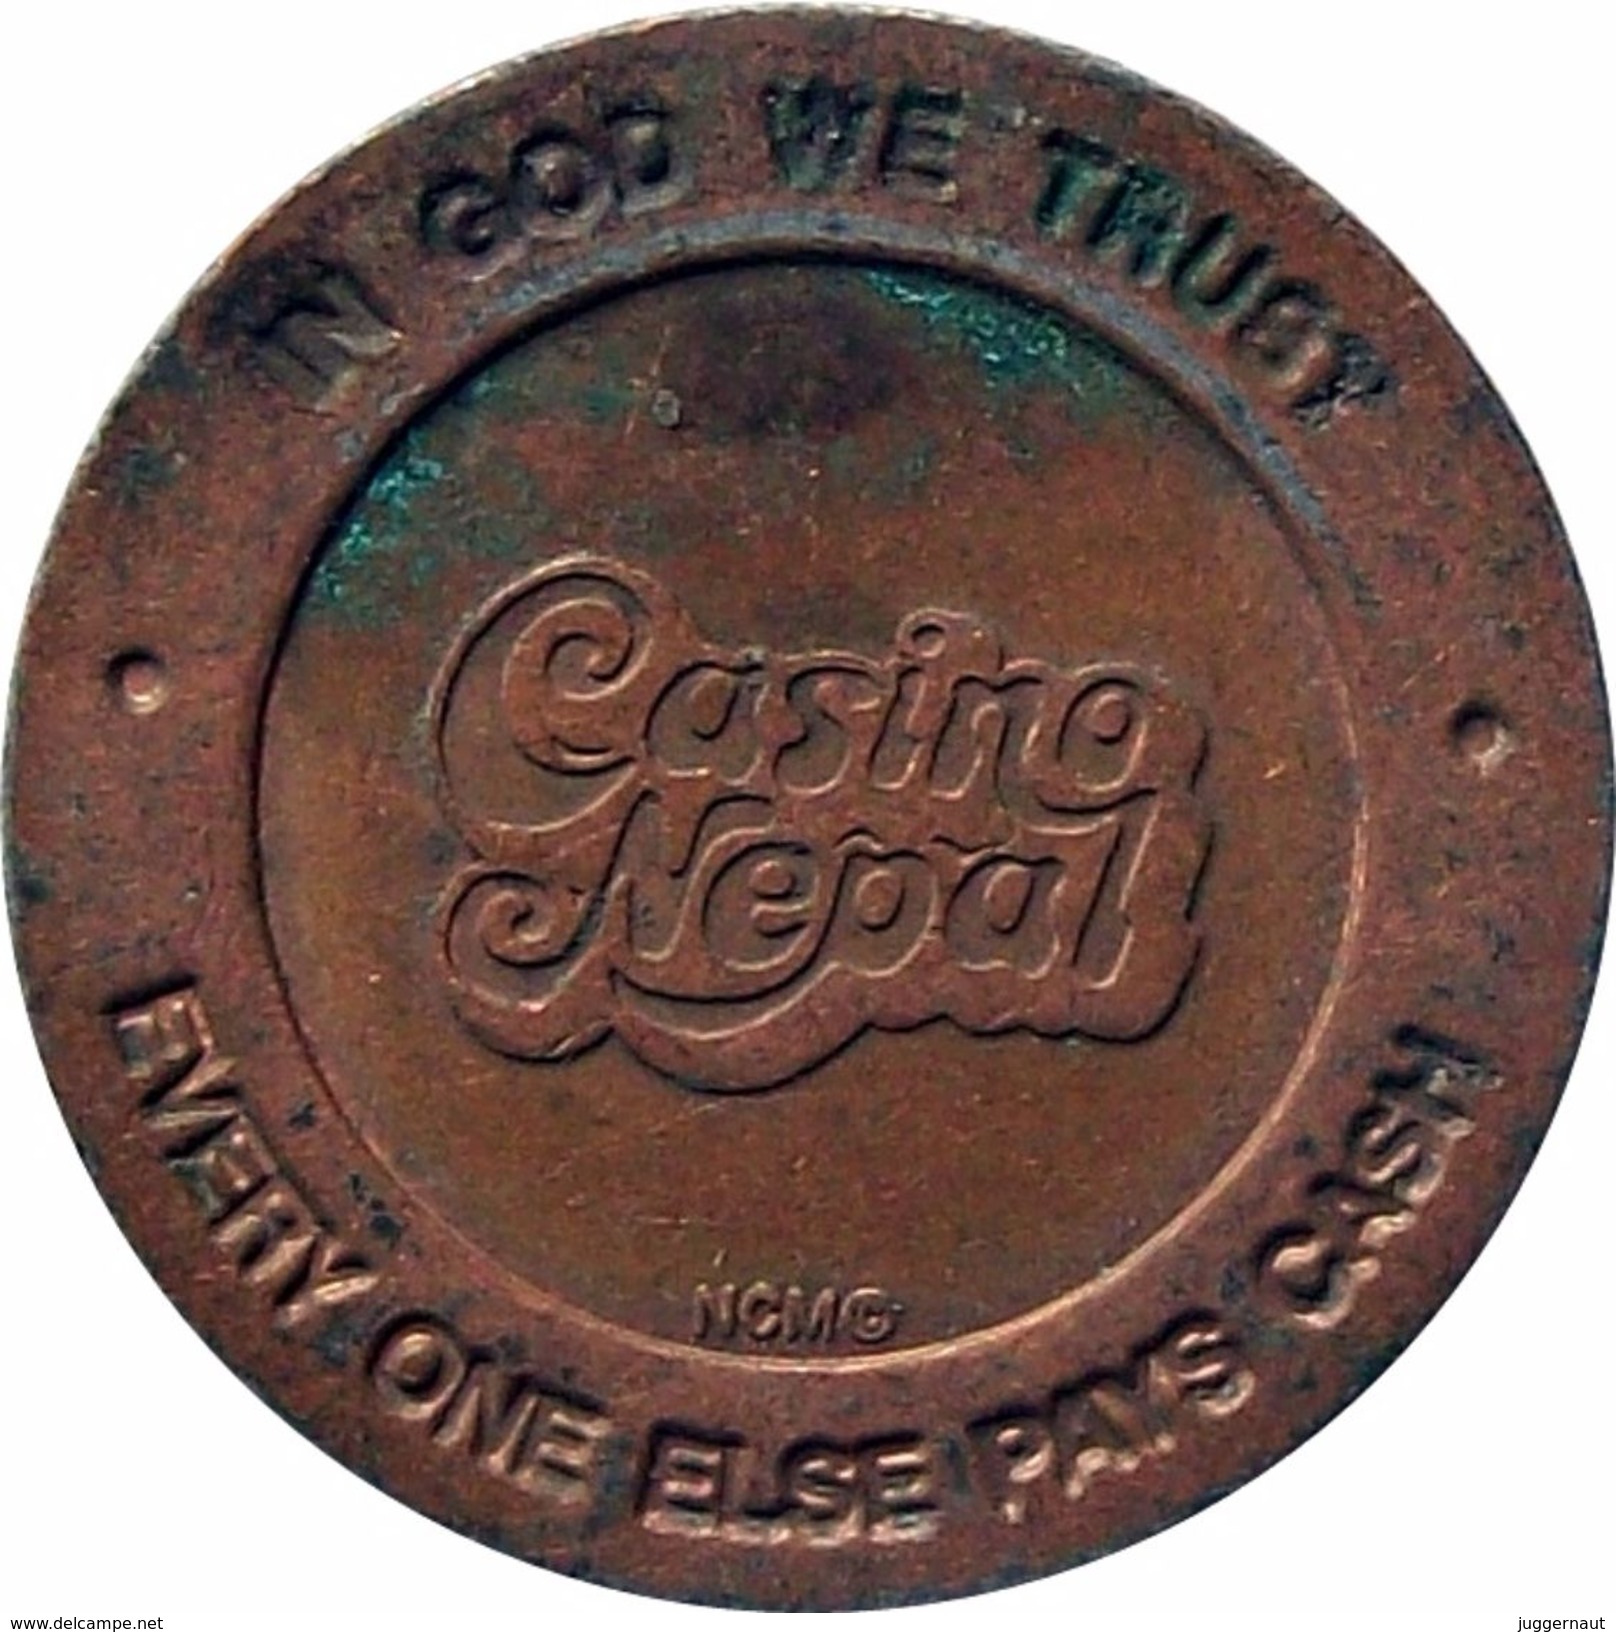 CASINO NEPAL GAME TOKEN COIN BRONZE ND VERY FINE VF - Casino